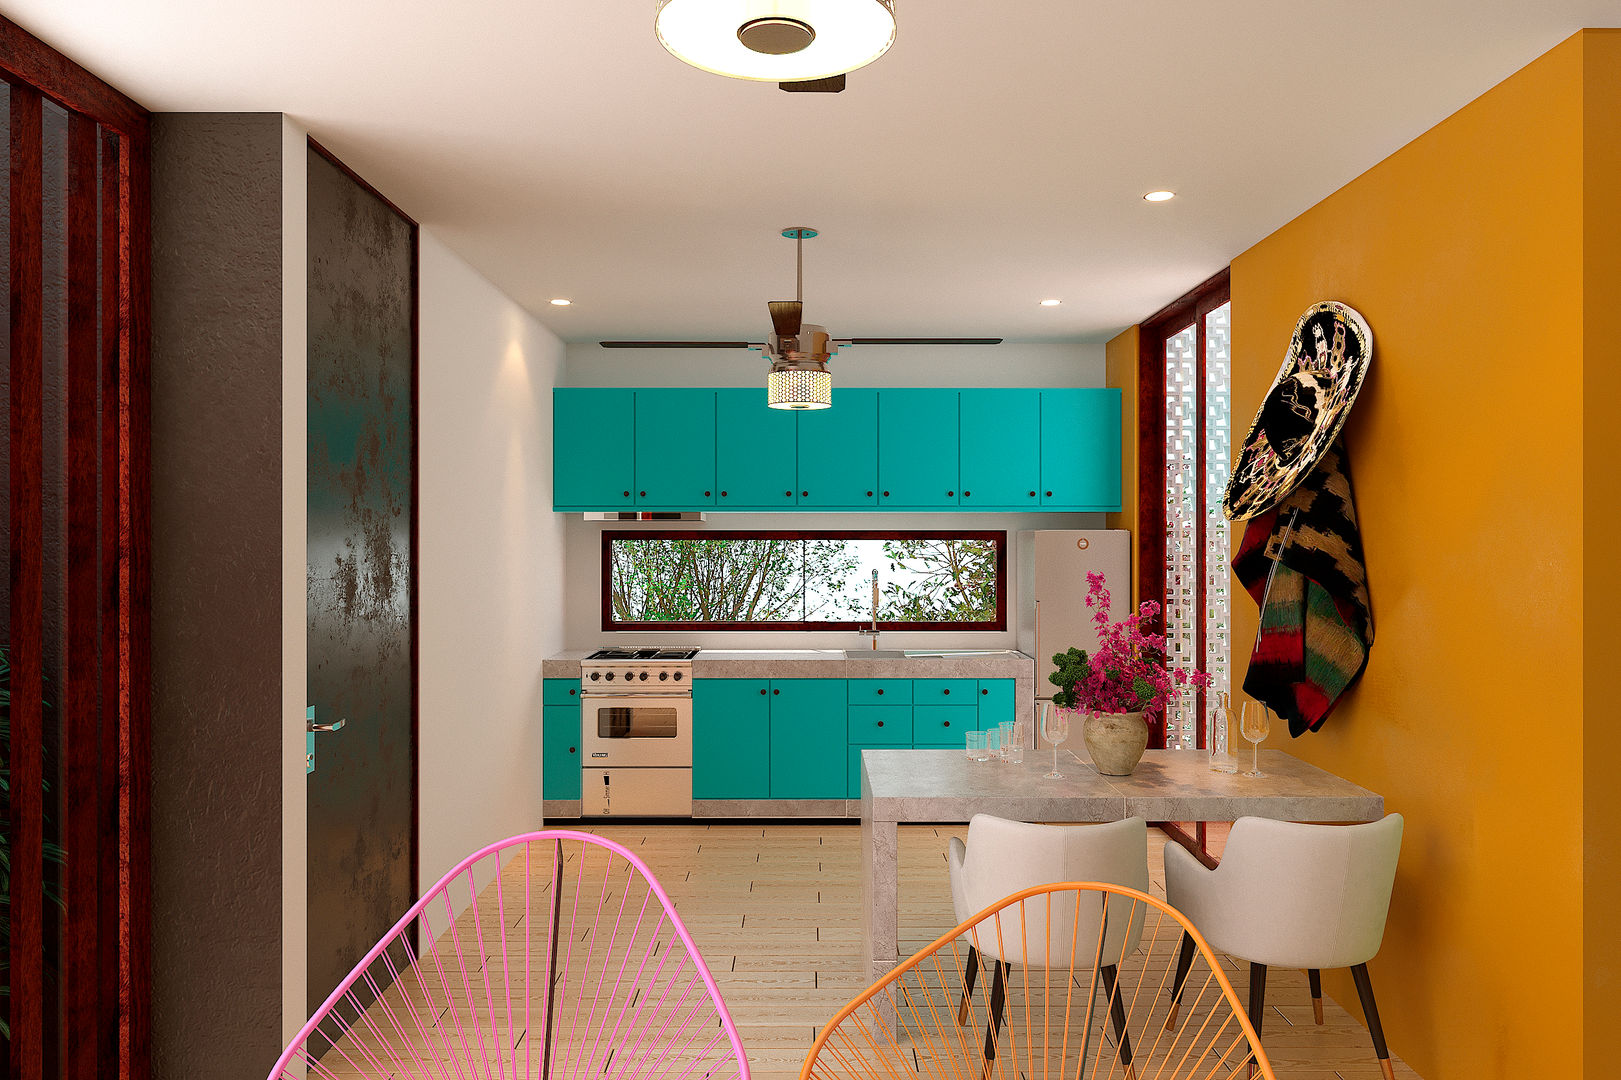 Cocina Laboratorio Mexicano de Arquitectura Cocinas pequeñas Concreto Azul cocina,amarillo,azul,mexicana,sillas